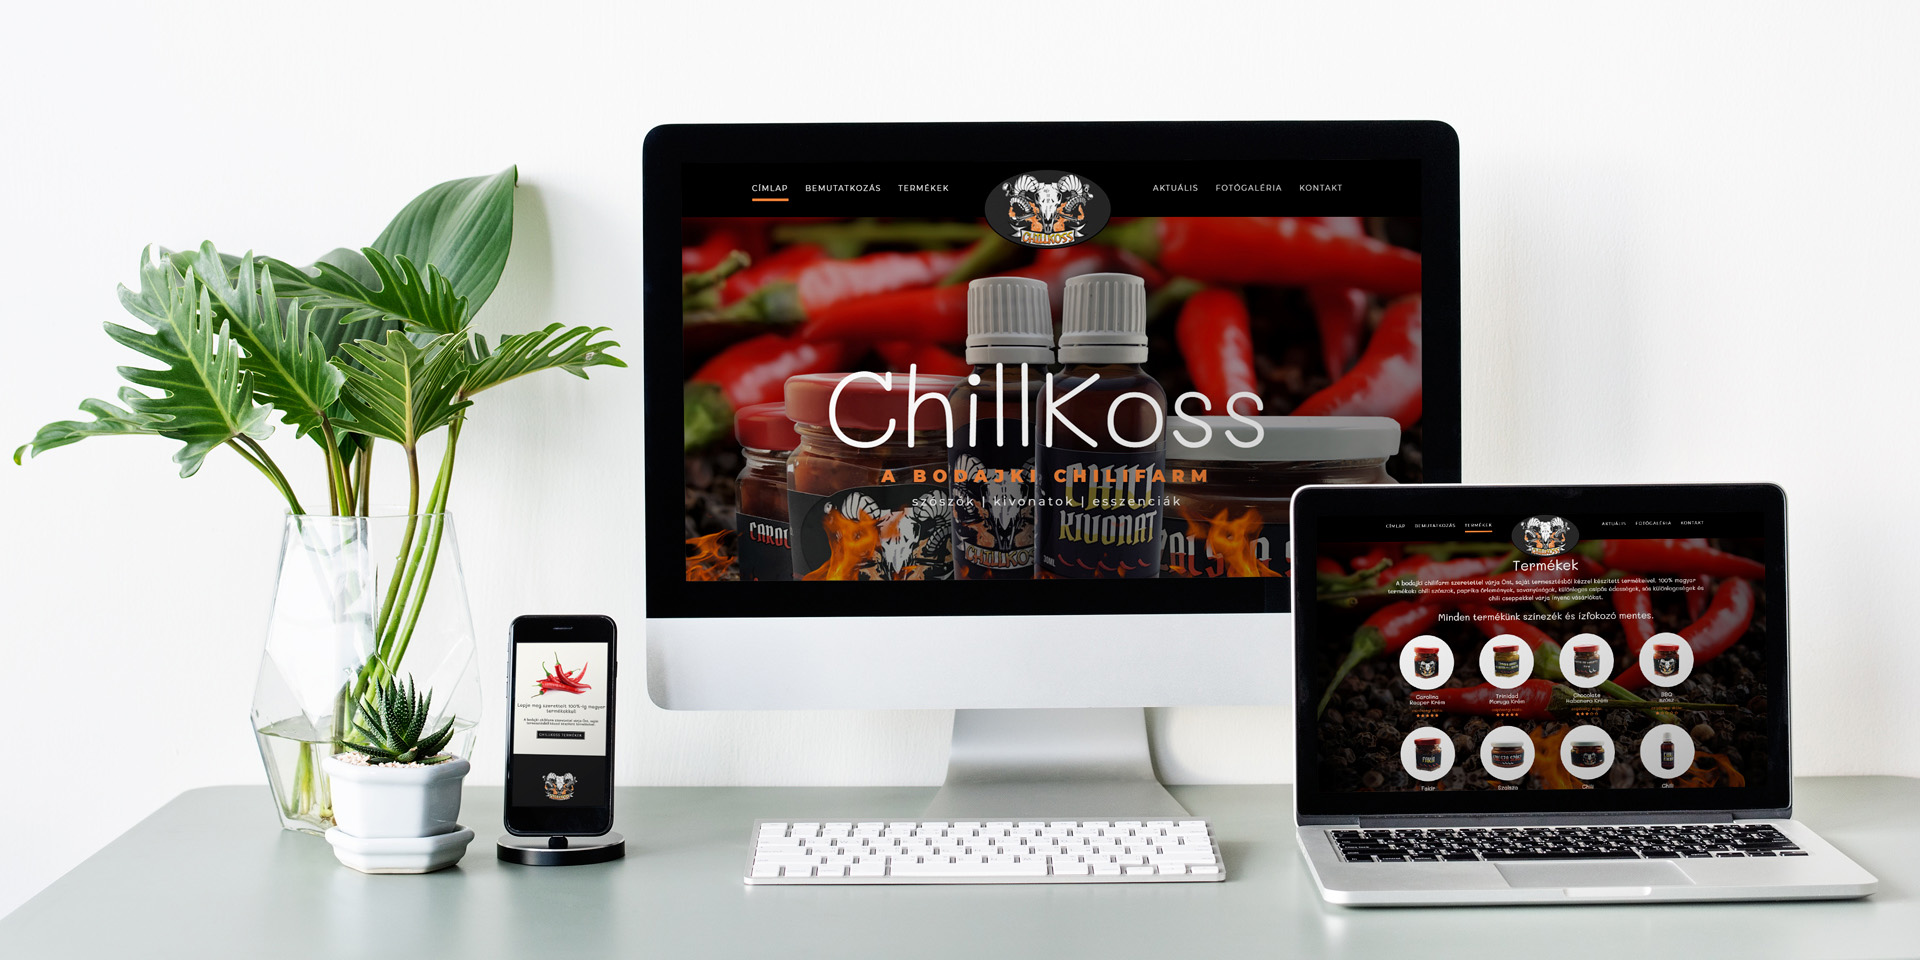 ChillKoss - Chilifarm from Bodajk